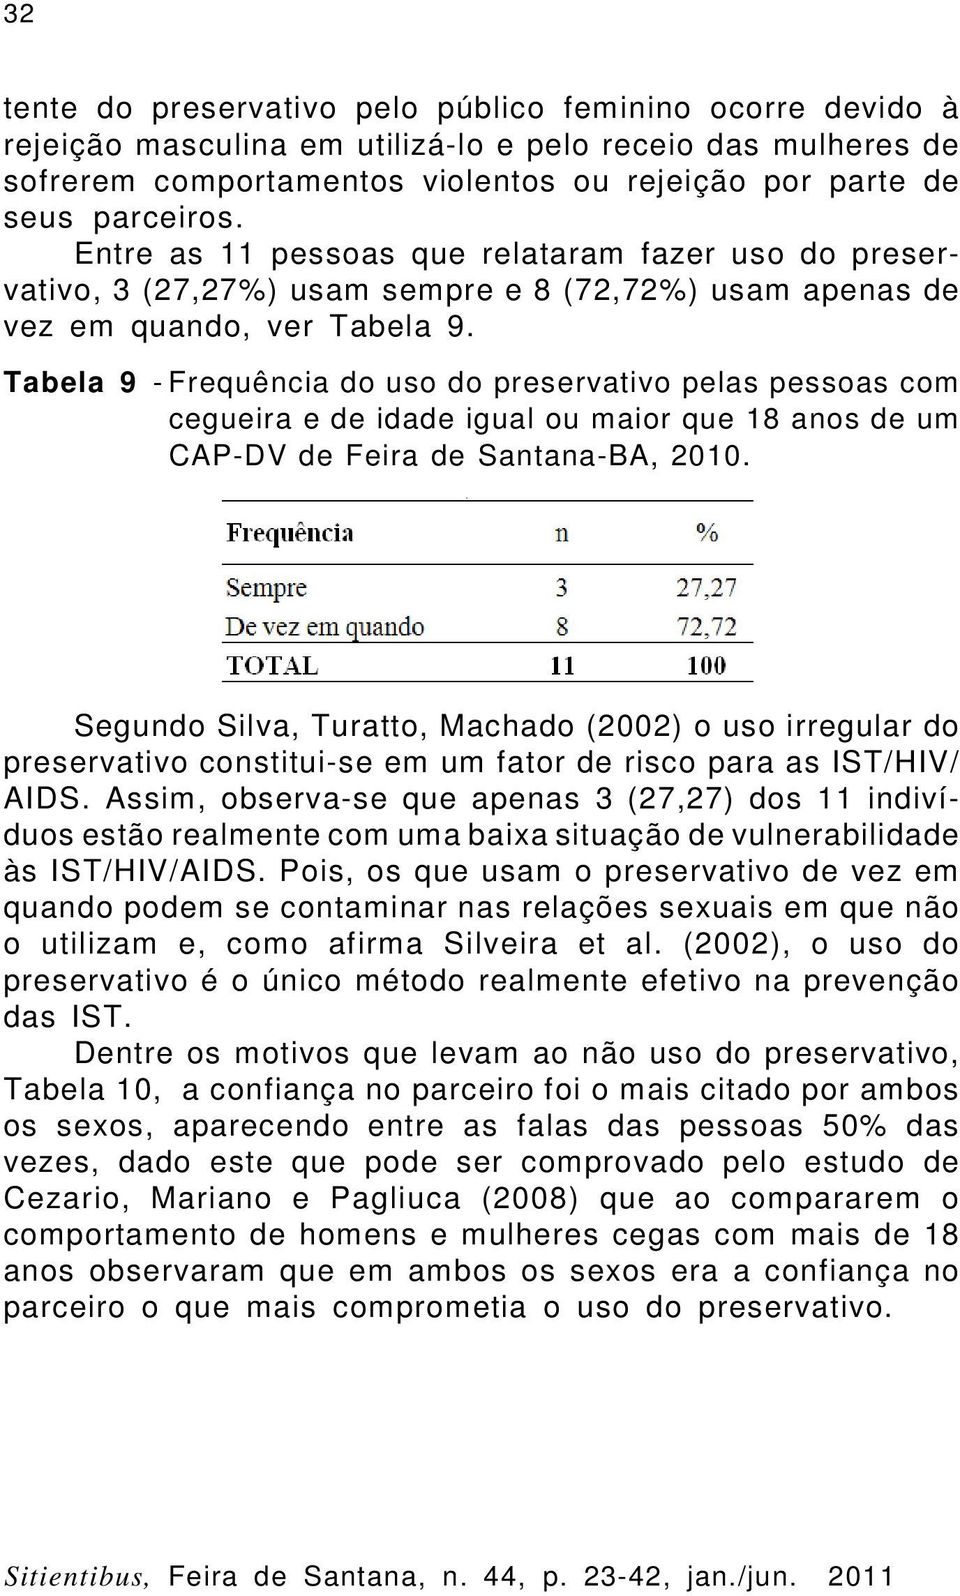 Tabela 9 - Frequência do uso do preservativo pelas pessoas com cegueira e de idade igual ou maior que 18 anos de um CAP-DV de Feira de Santana-BA, 2010.